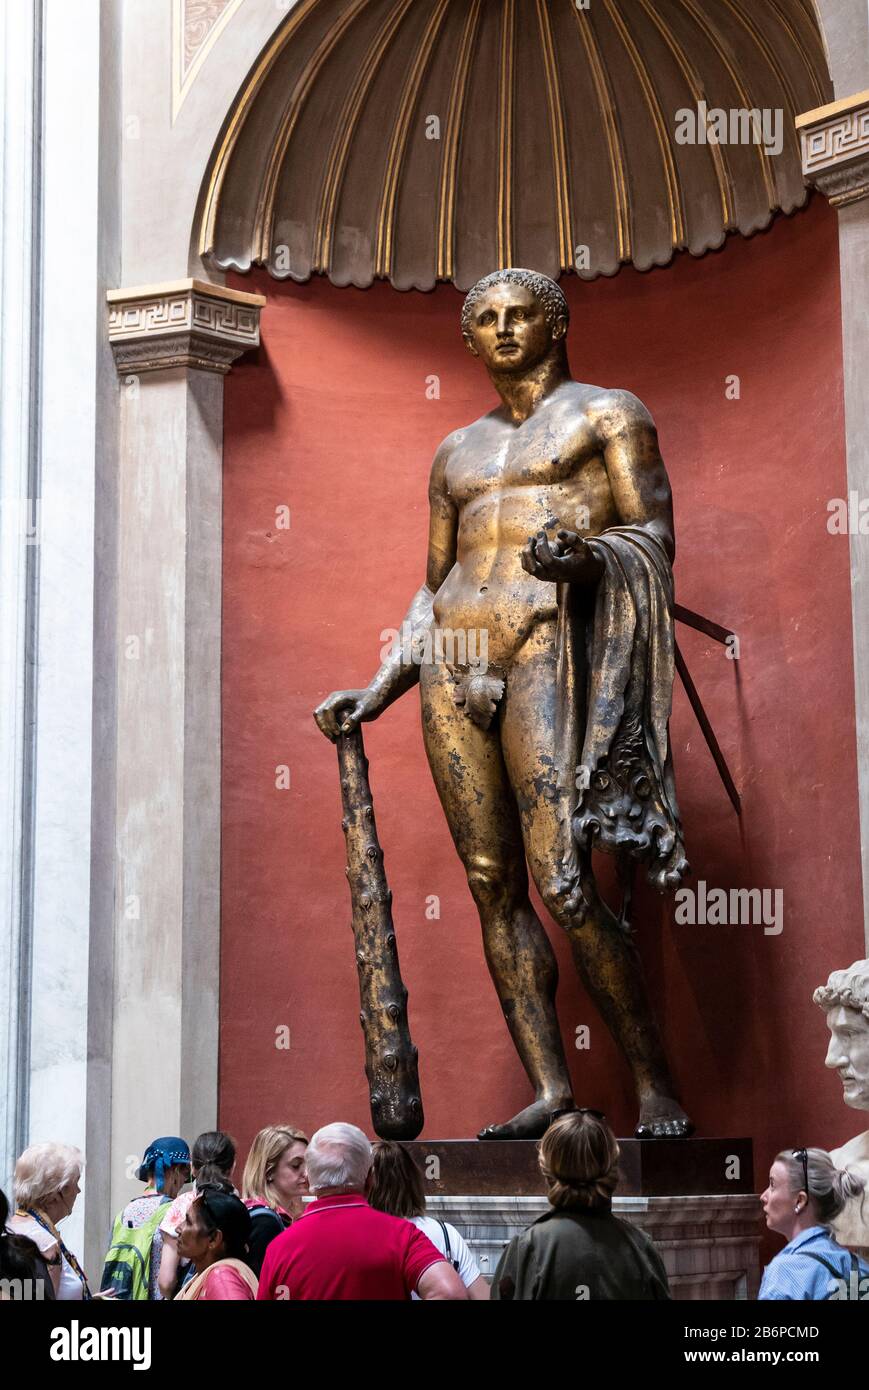 Herkules, der griechische Herakles, einer der berühmtesten legendären Helden aus dem griechischen Rom, trägt Das Goldene Vlies im Vatikanischen Museum, Rom, Italien Stockfoto